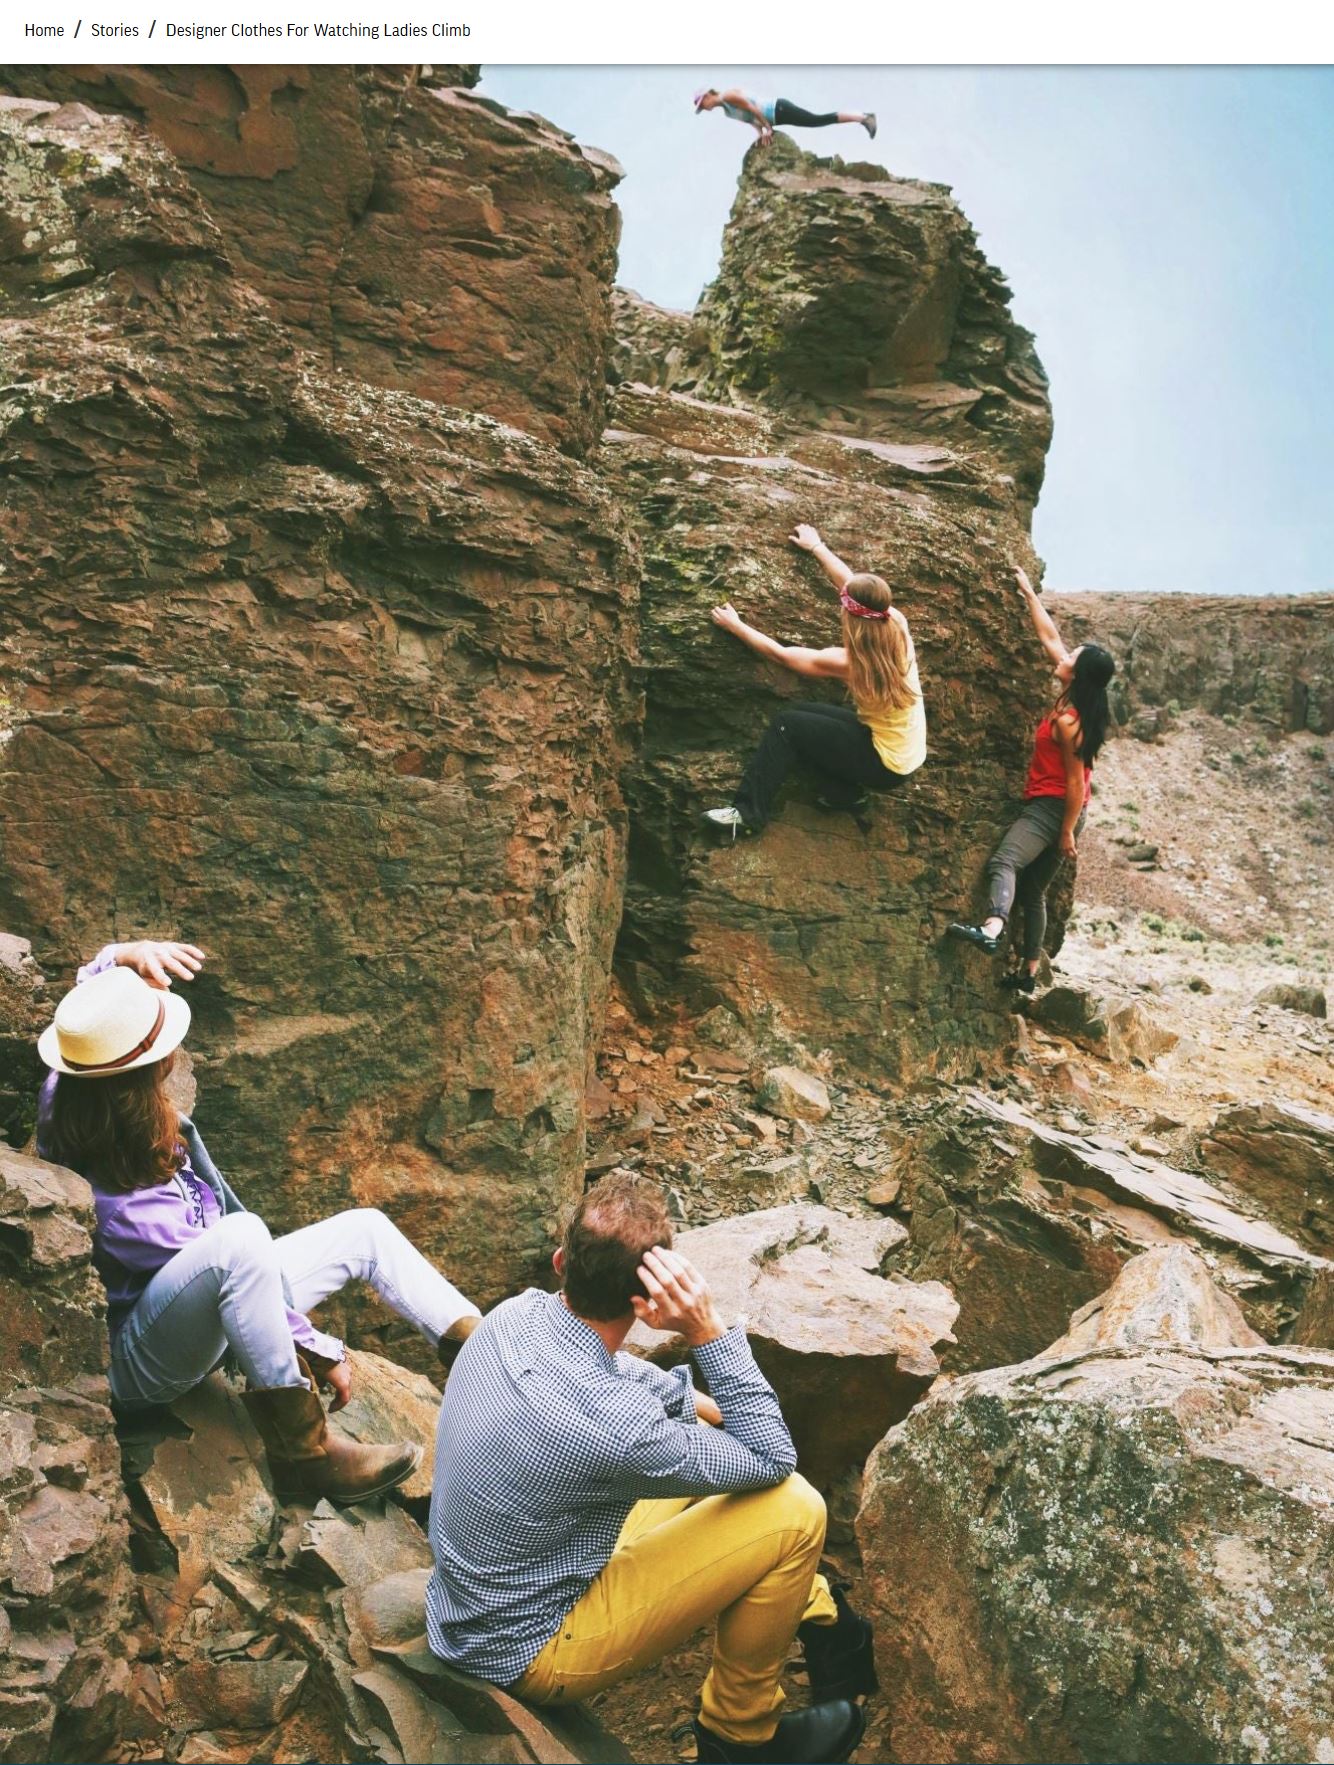 Drei Frauen in Sportkleidung klettern an einem Felsen, zwei Männer, nicht sportlich gekleidet, schauen zu